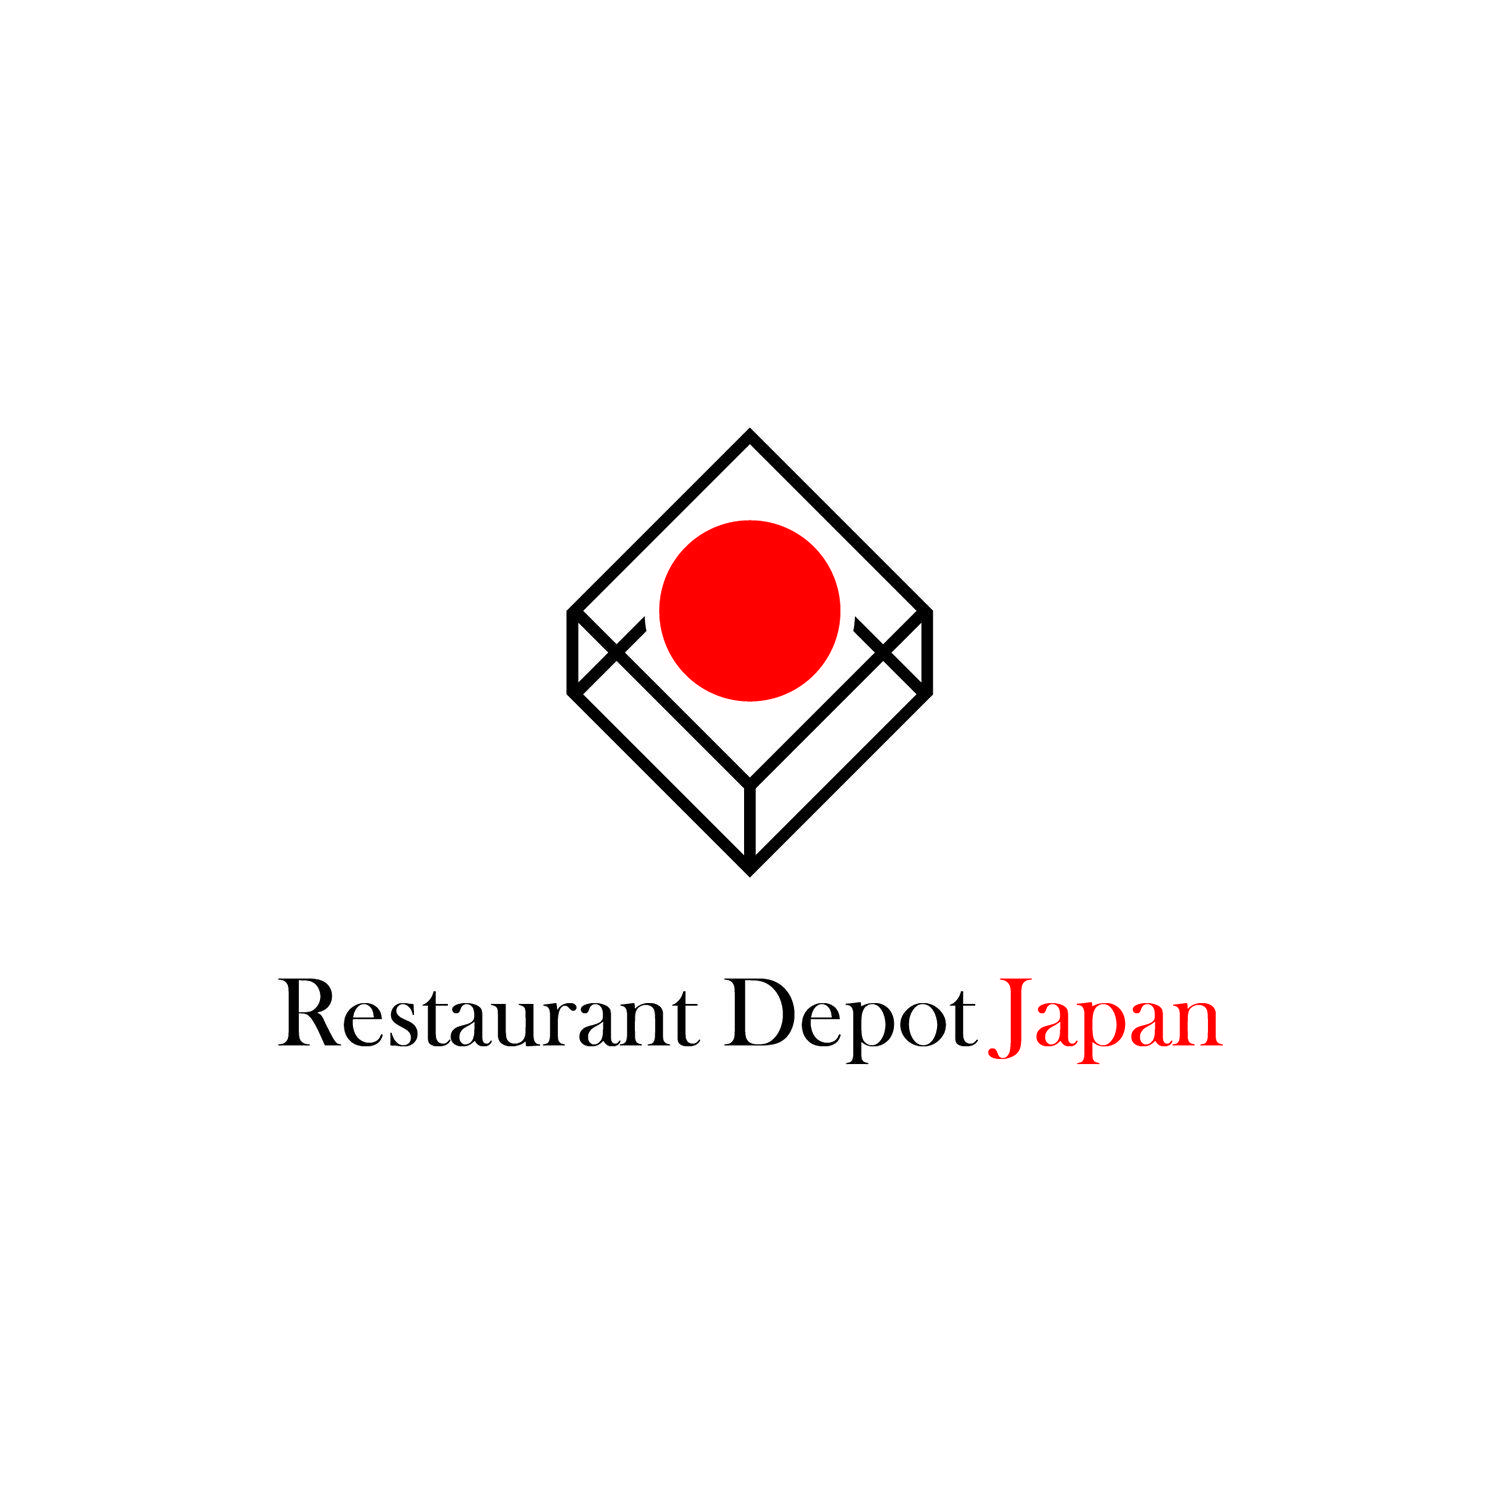 Lavin Logo - Elegant, Playful, Food Store Logo Design for Restaurant Depot Japan ...